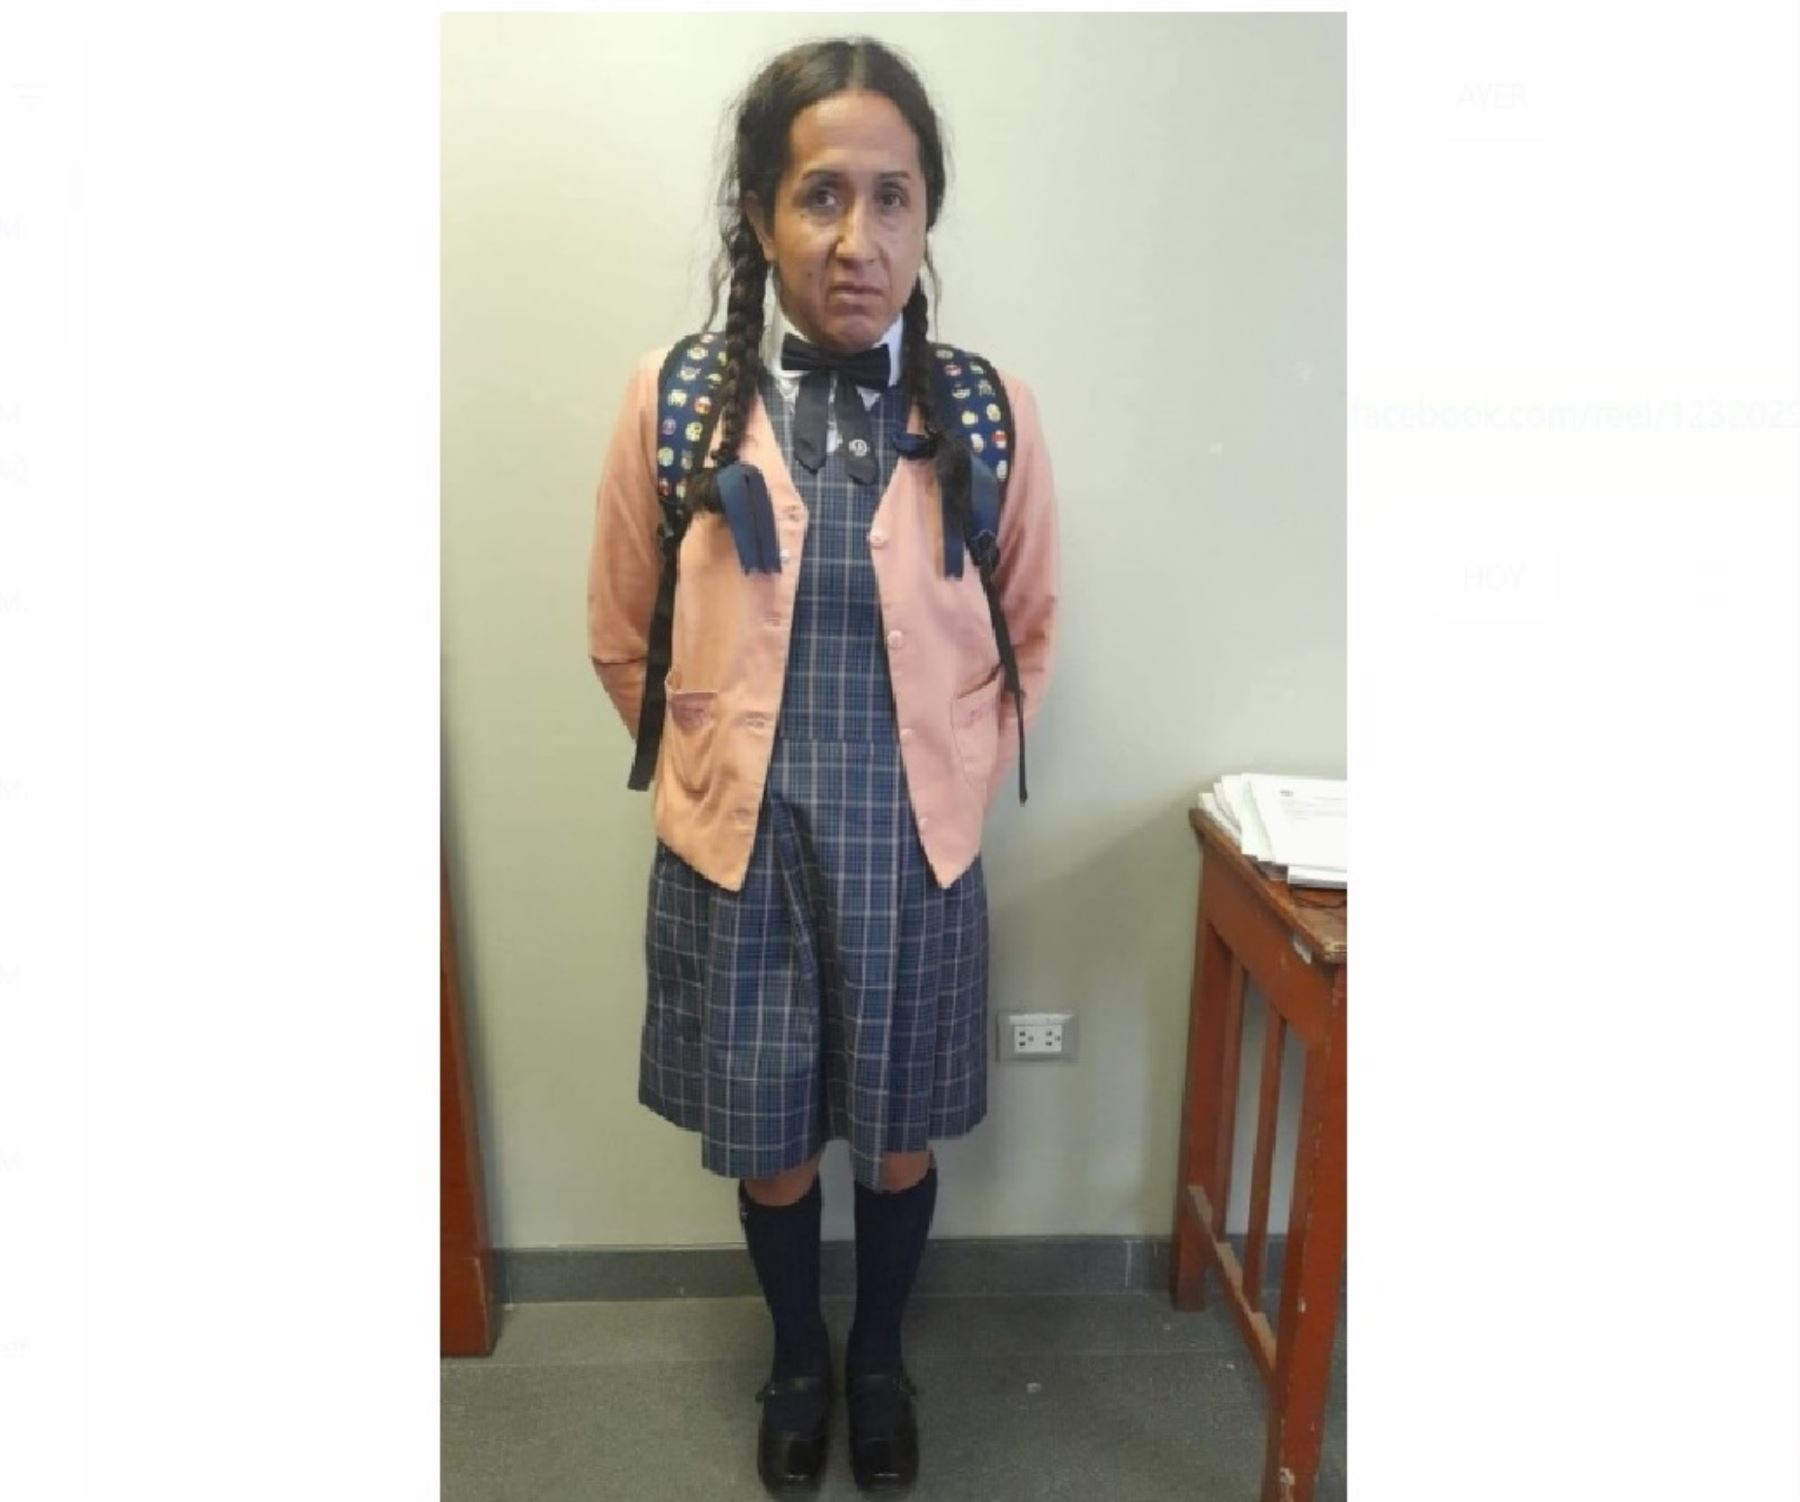 Fiscalía de Violencia contra la Mujer de Huancayo abrió investigación a Walter Solís Calero, el sujeto que se disfrazó de alumna para ingresar a un colegio y esconderse en el baño de mujeres.